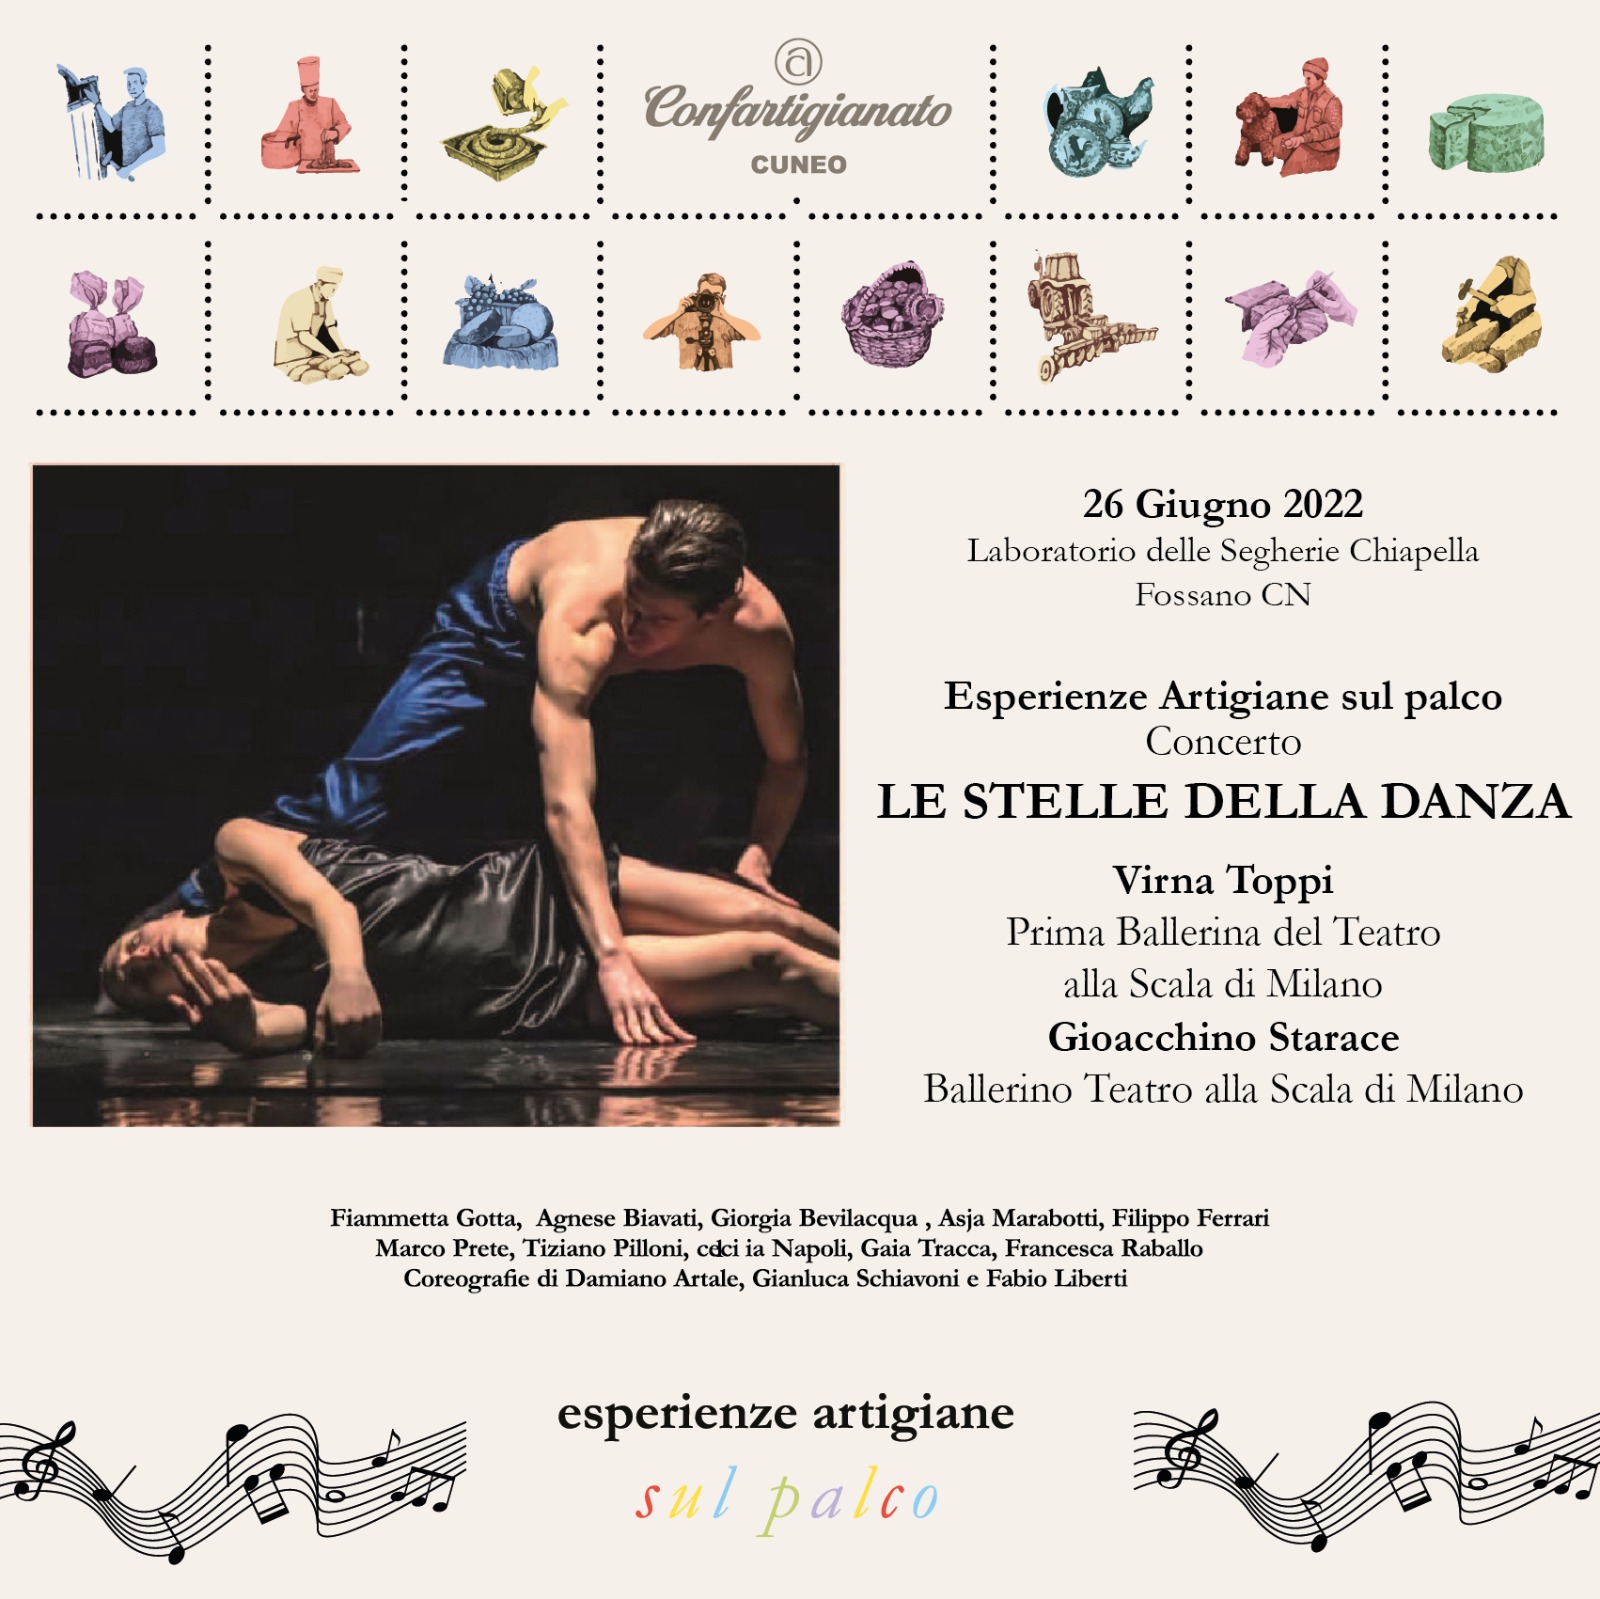 Le Stelle della Danza, Eccellenze Creative 2022 – Laboratorio delle Segherie Chiapella, Fossano (Cn)